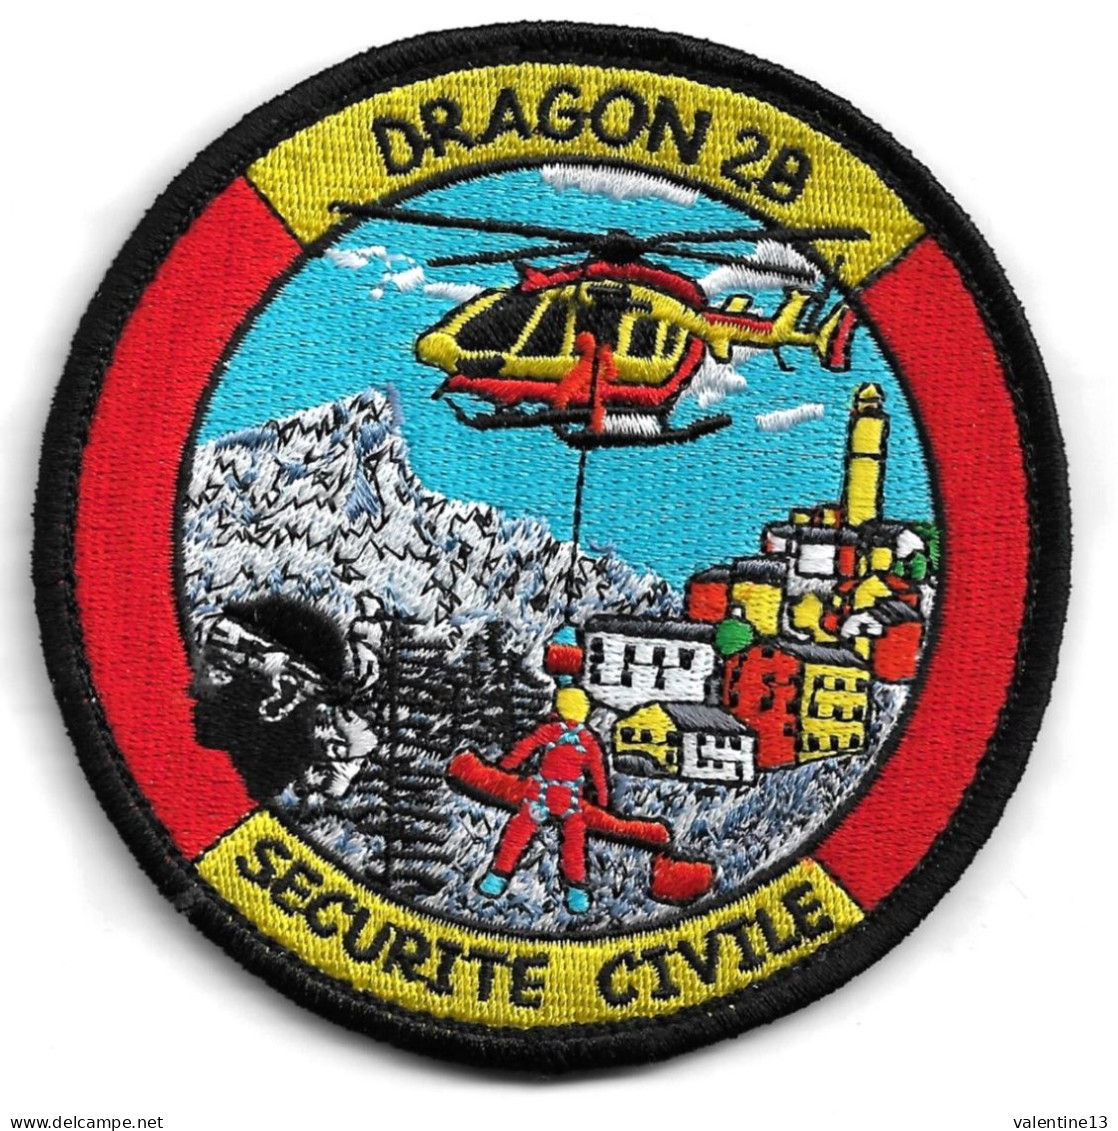 Ecusson SECURITE CIVILE DRAGON 2B EN HELITREUILLAGE - Pompiers